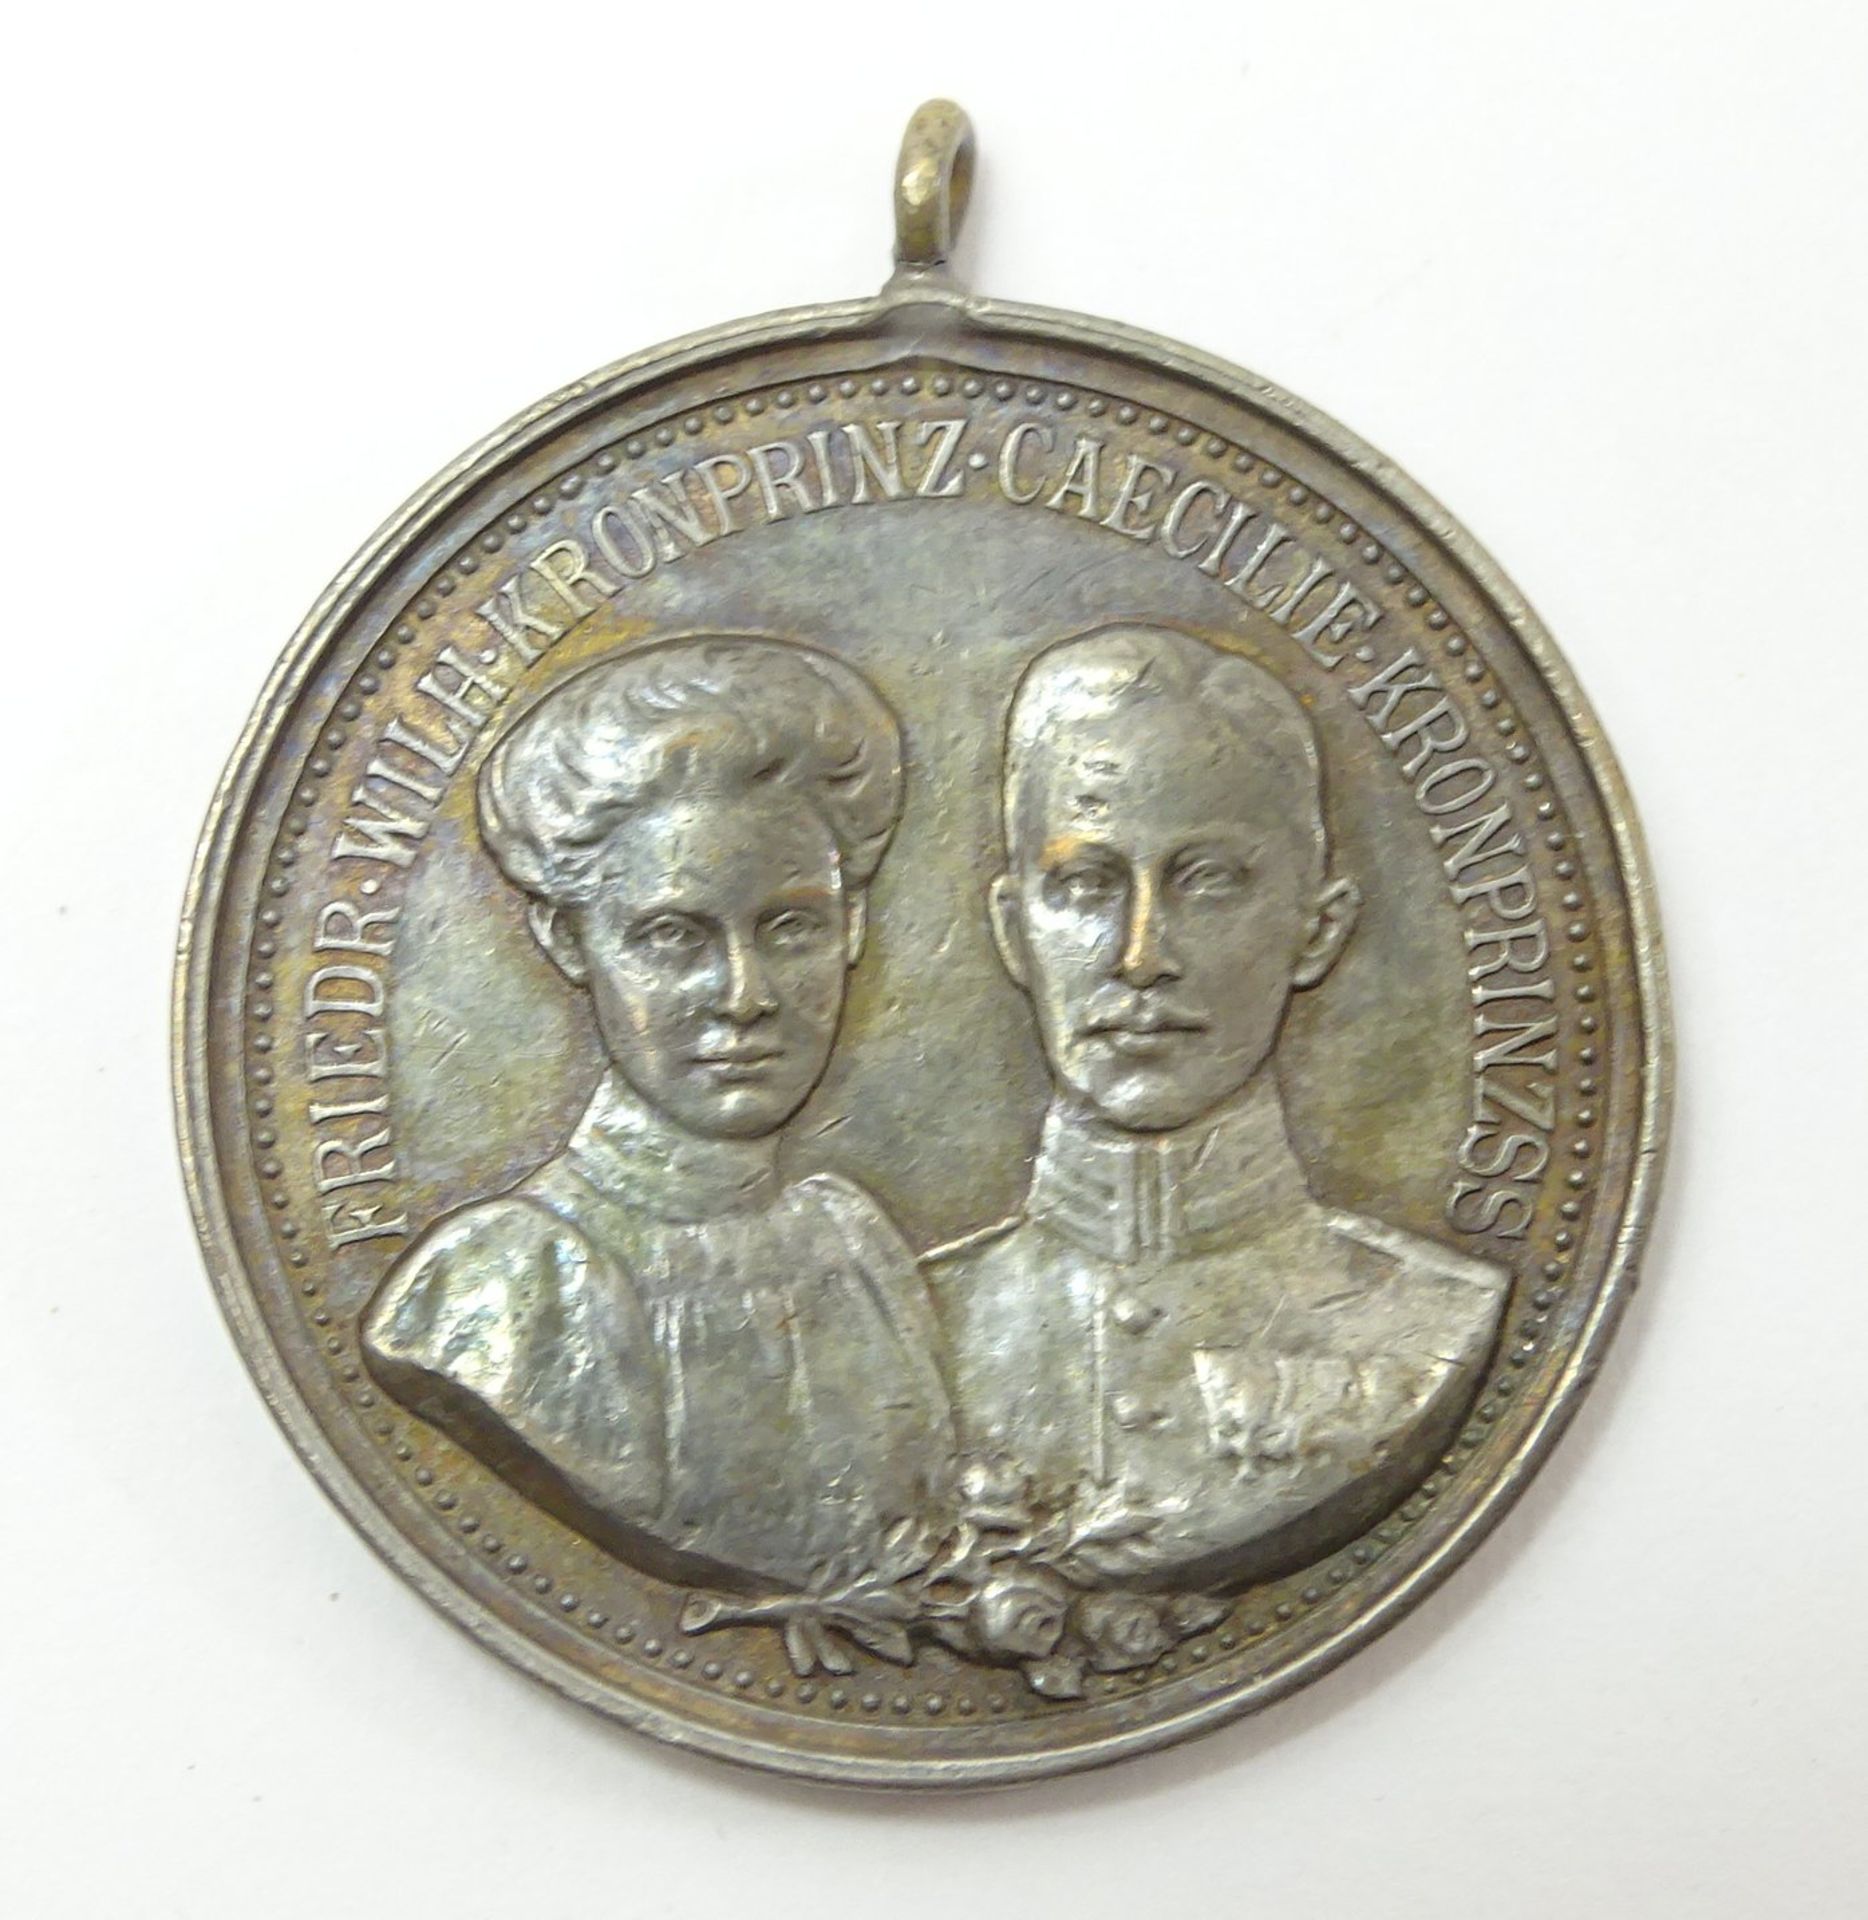 Bronzemedaille "Zum Andenken an die Vermählungsfeier", Brandenburg-Preußen 1905, Friedrich Wilhelm 